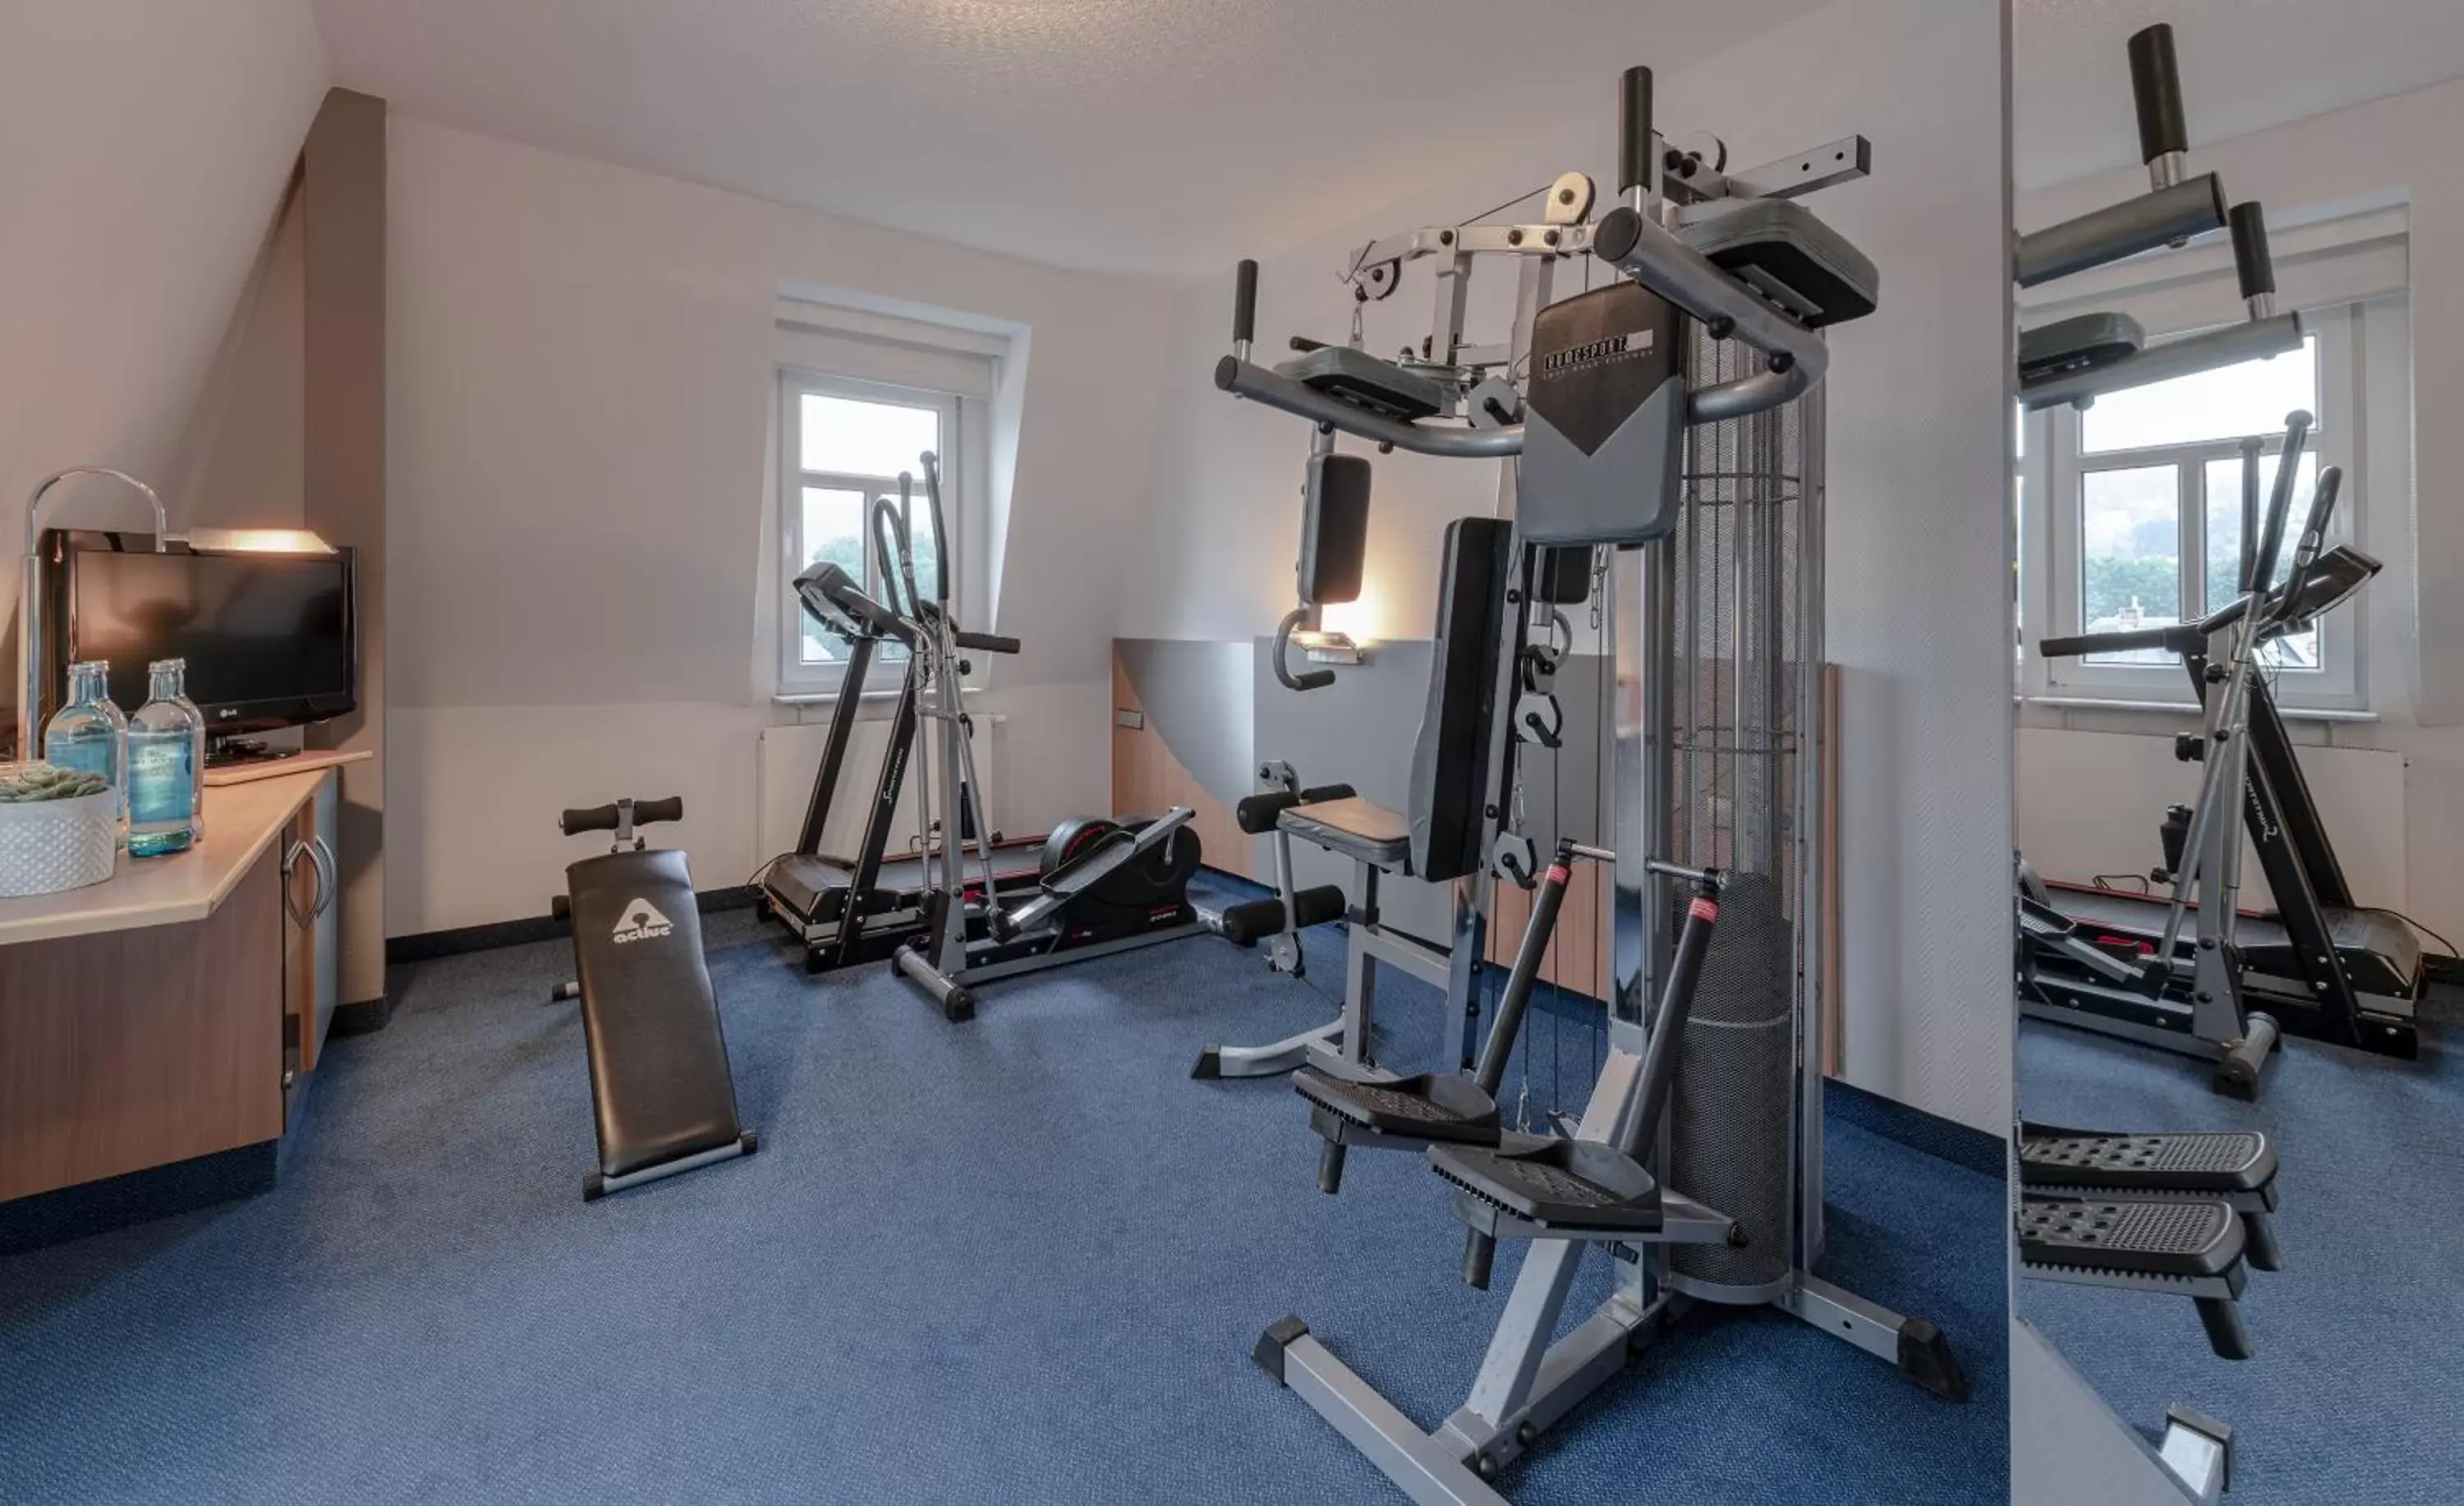 Fitness centre/facilities, Fitness Center/Facilities in Hotel Neustädter Hof